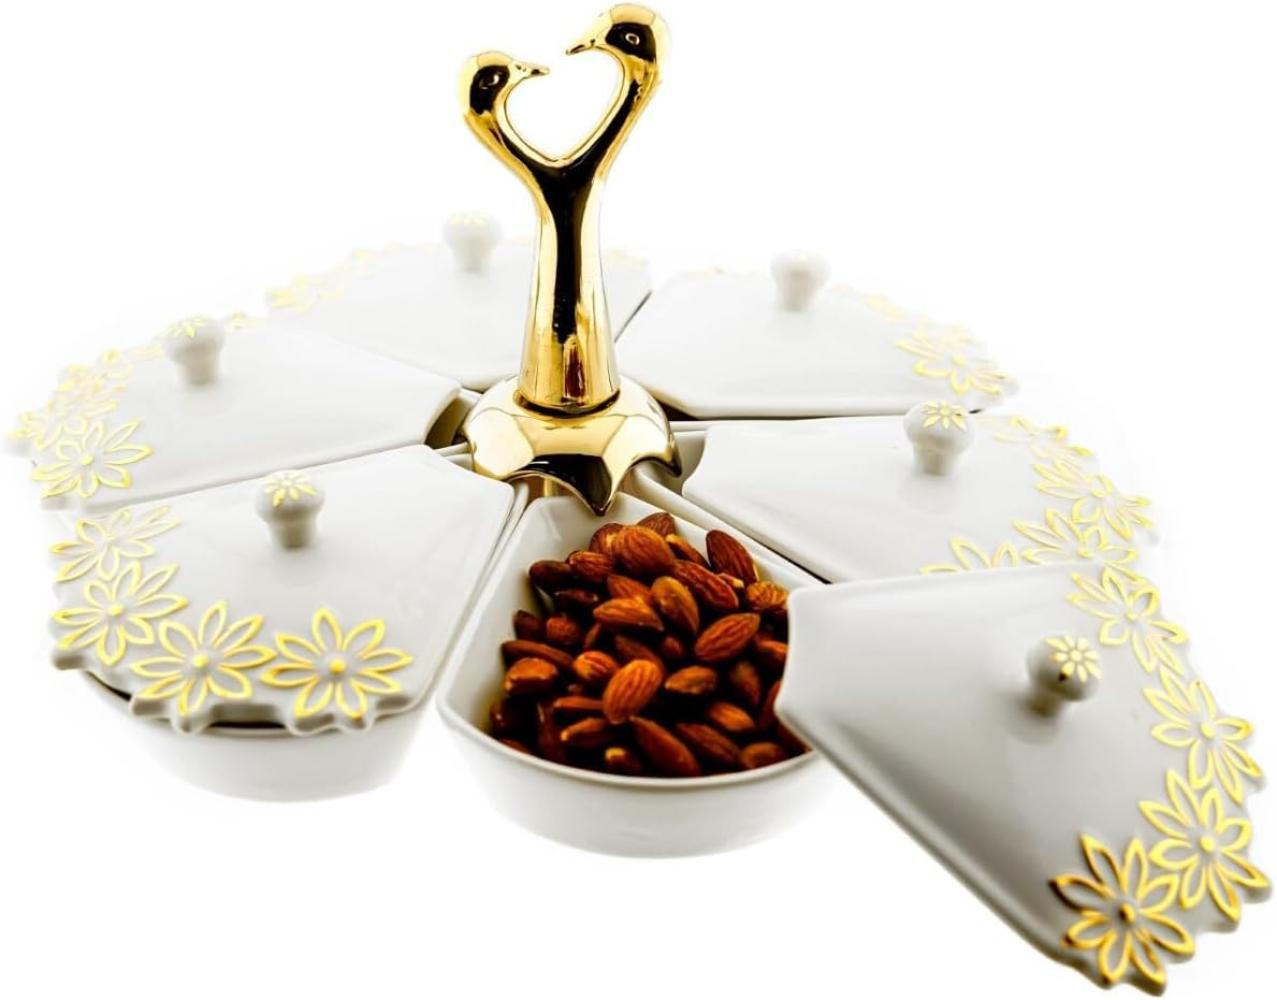 6-teiliges Snackschalen-Set aus Porzellan in Weiß Goldene Halterung und Blumenmuster Bild 1